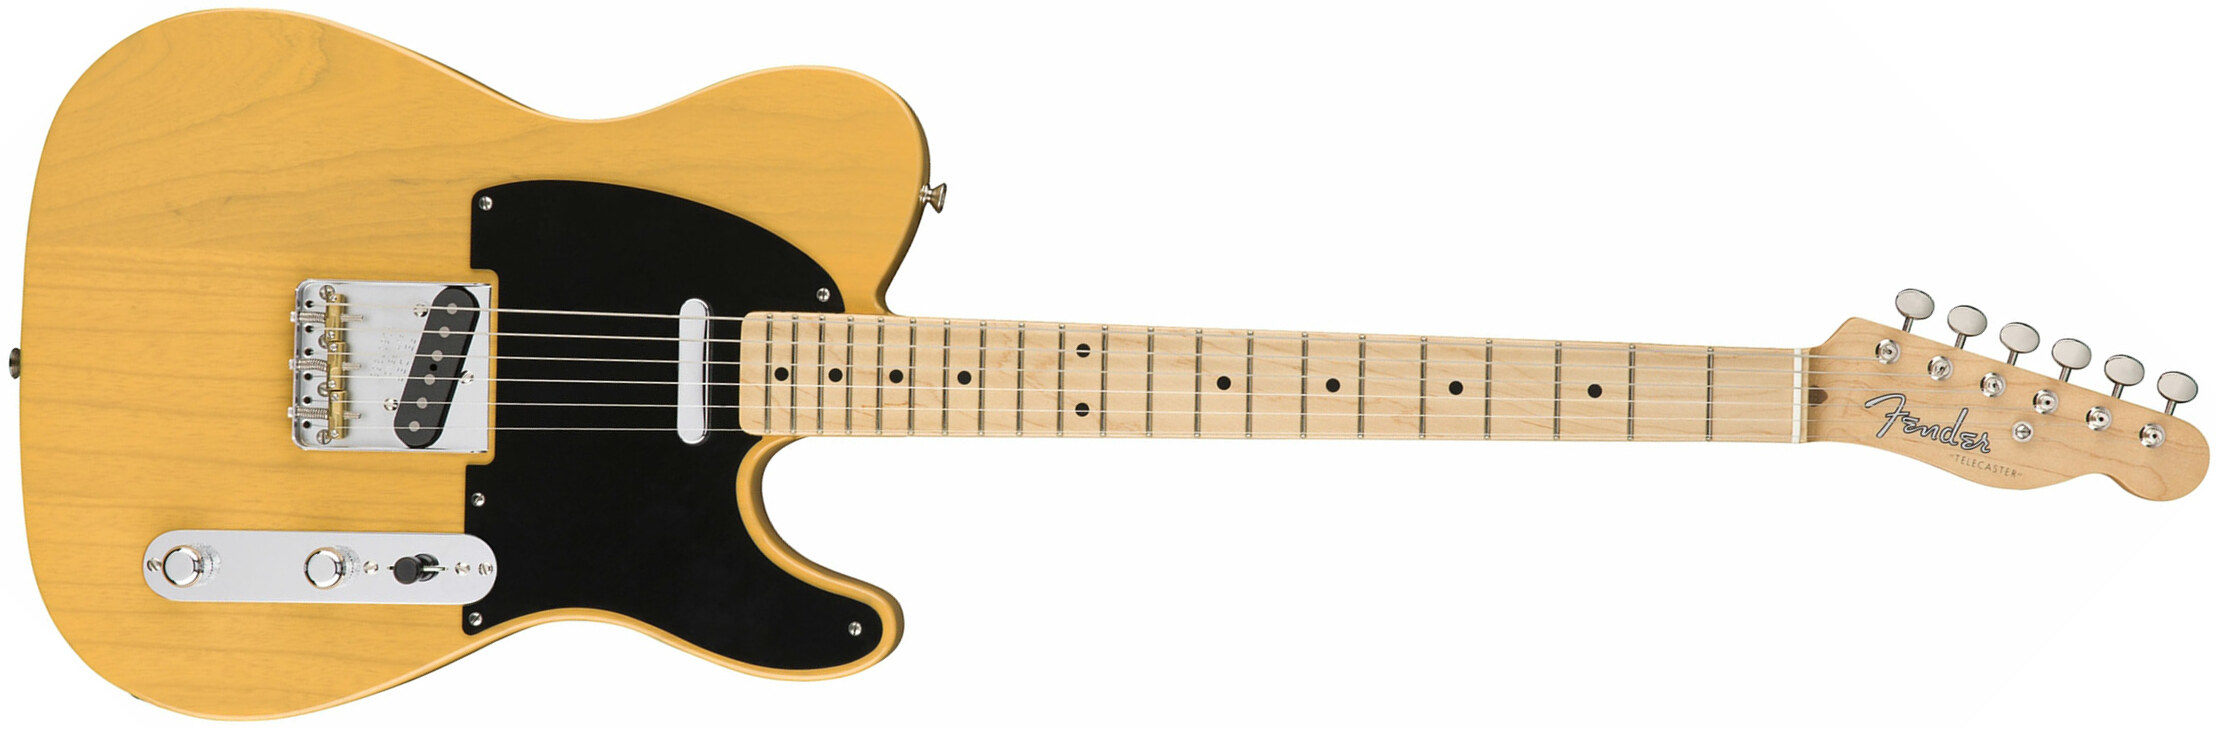 Fender Tele '50s American Original Usa Mn - Butterscotch Blonde - Guitare Électrique Forme Tel - Main picture